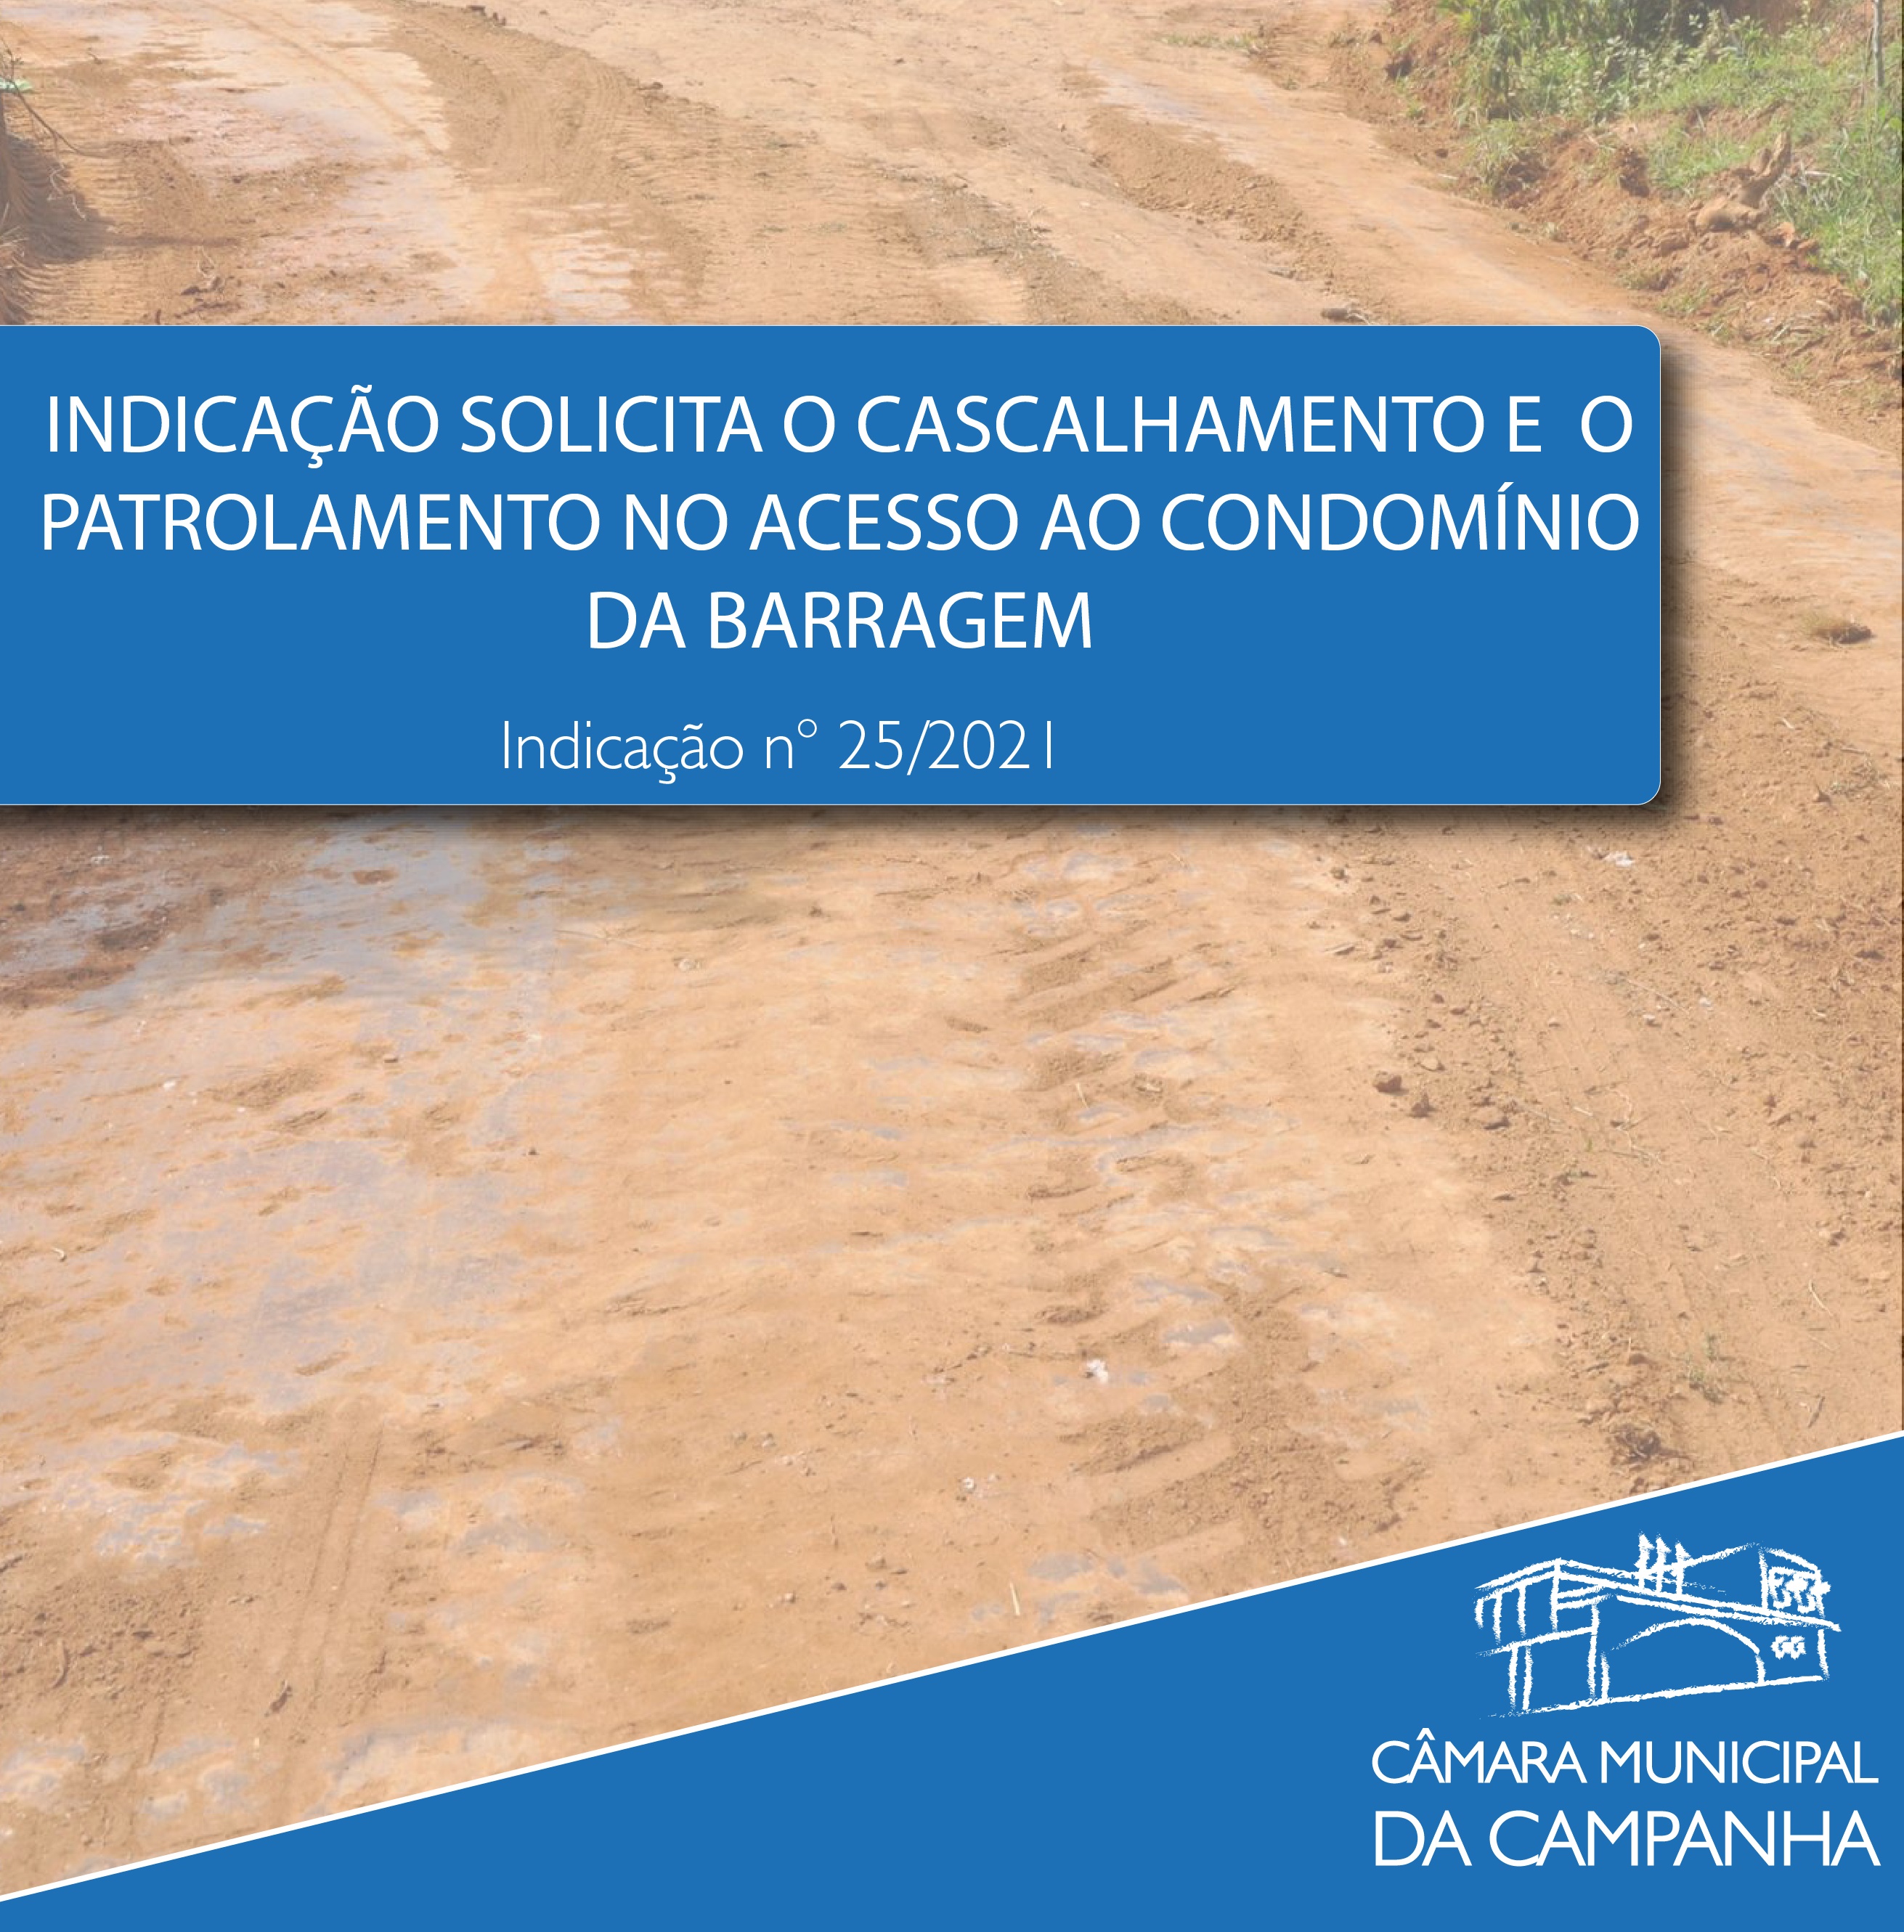 Indicação solicita o cascalhamento e patrolamento da estrada de acesso ao “Condomínio da Barragem”